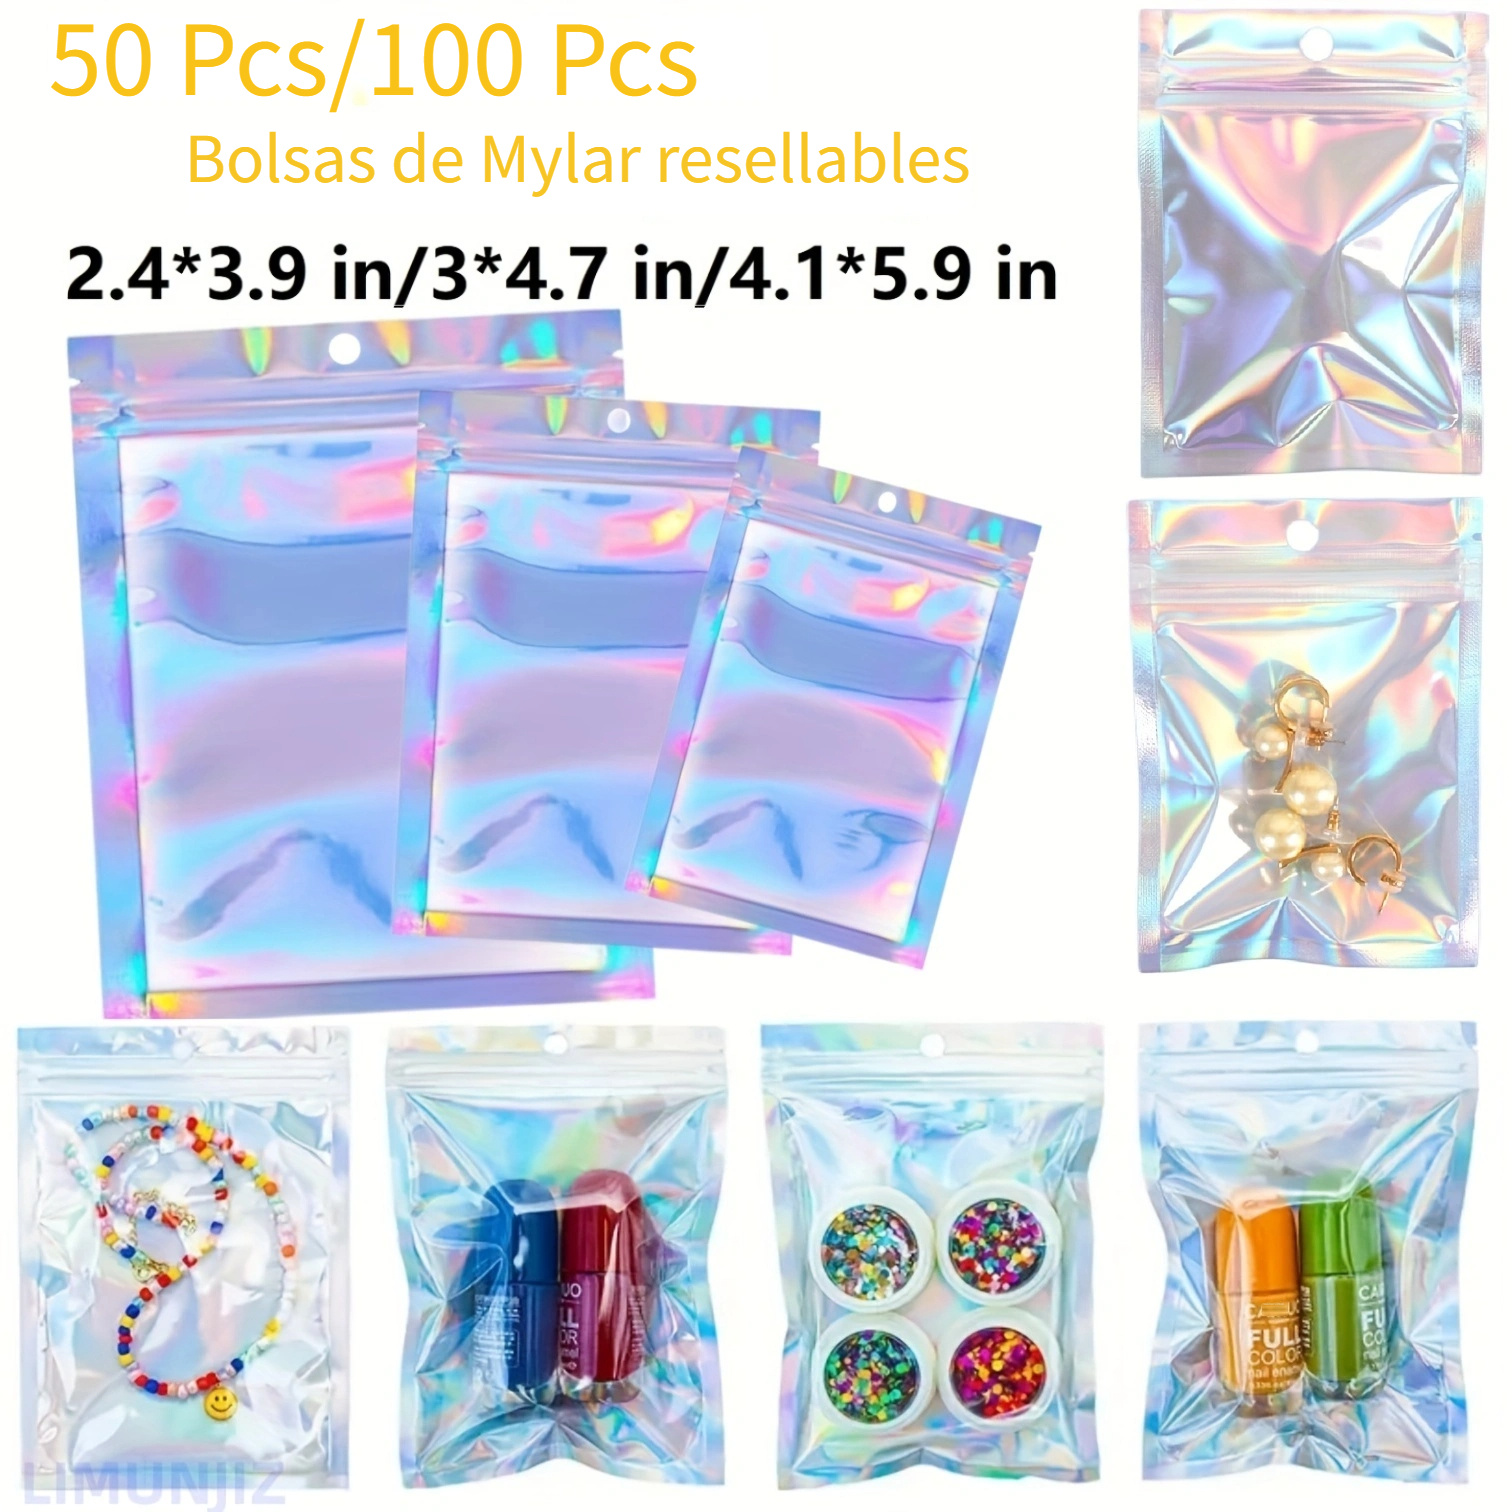 200 bolsas de Mylar con cierre de cremallera, bolsas pequeñas de aluminio  sellables, bolsa de almacenamiento con cierre hermético (multicolor)